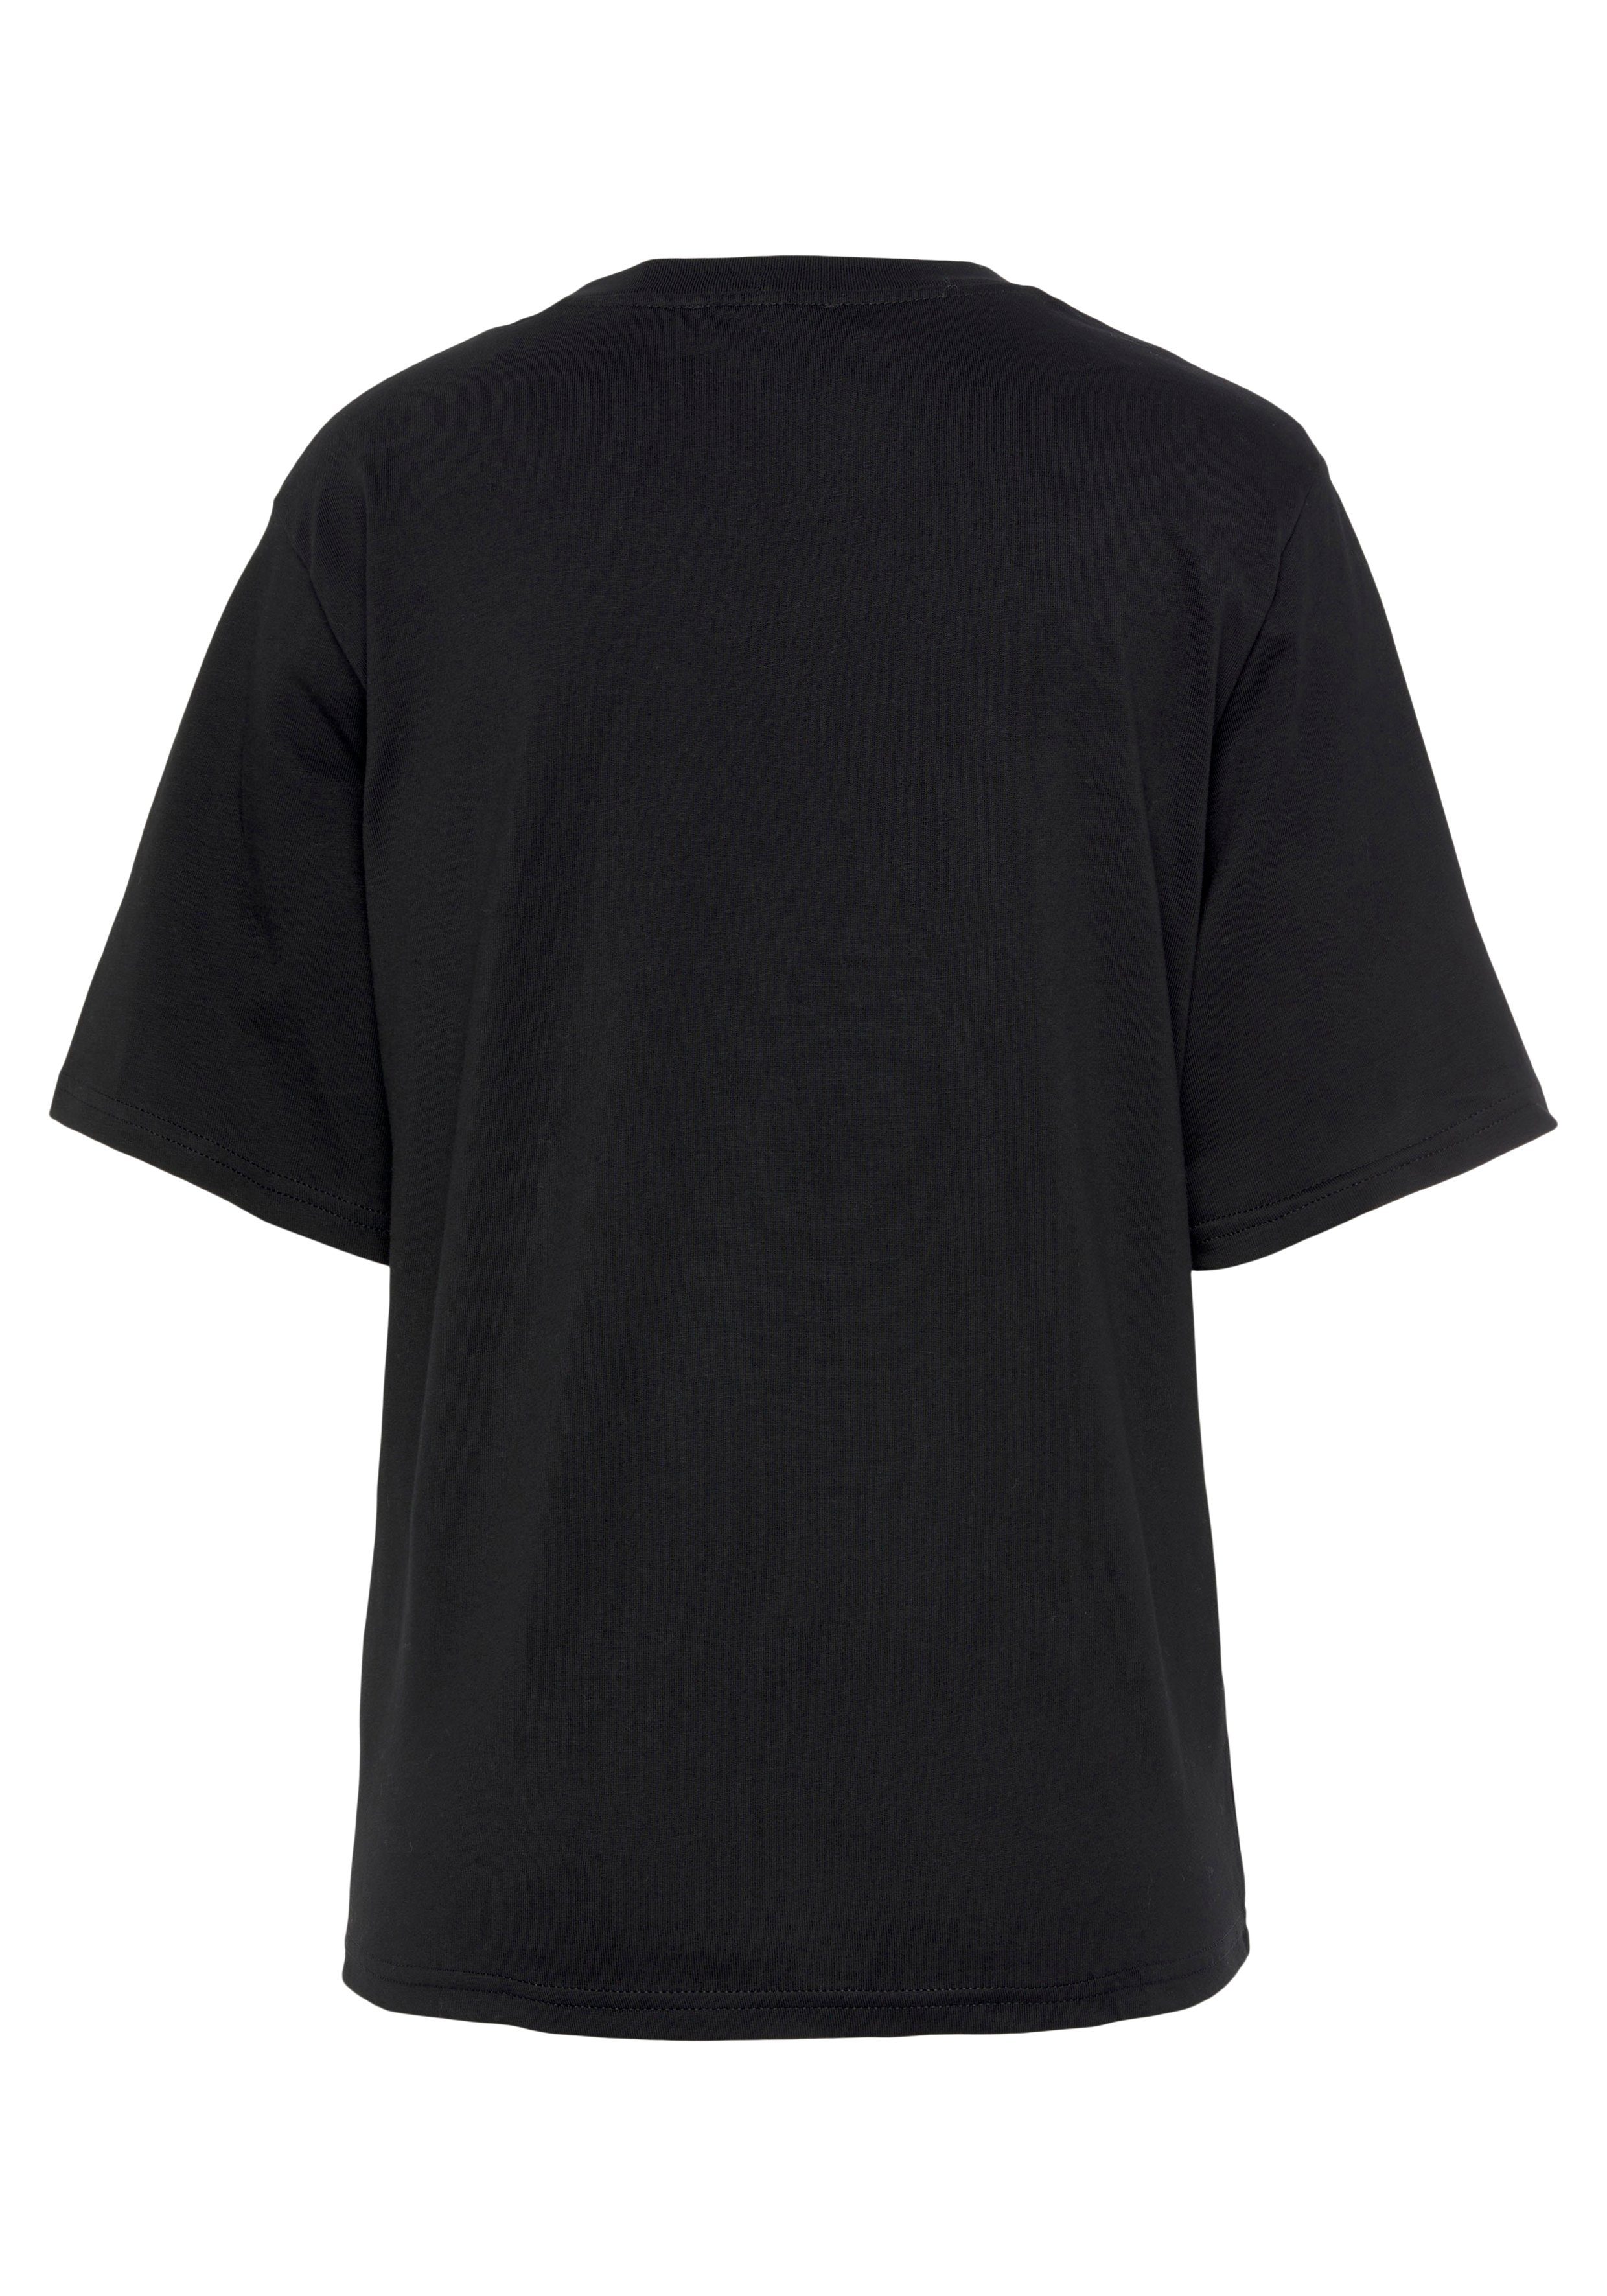 United Colors of Benetton Brust Logodruck mit schwarz auf der T-Shirt